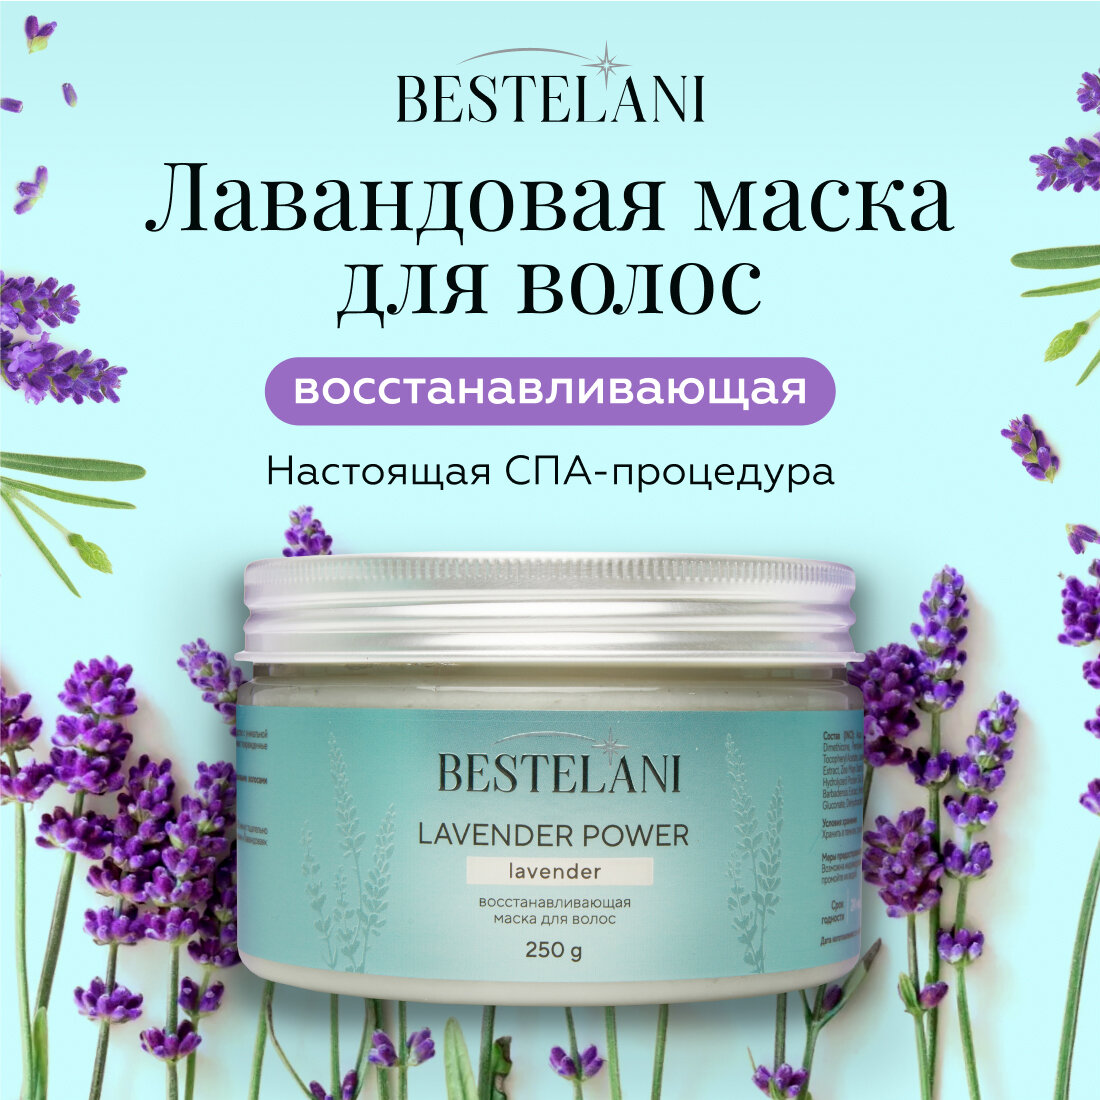 Восстанавливающая маска для волос "Lavender Power" от бренда "Bestelani" для всех типов волос, 250 мл